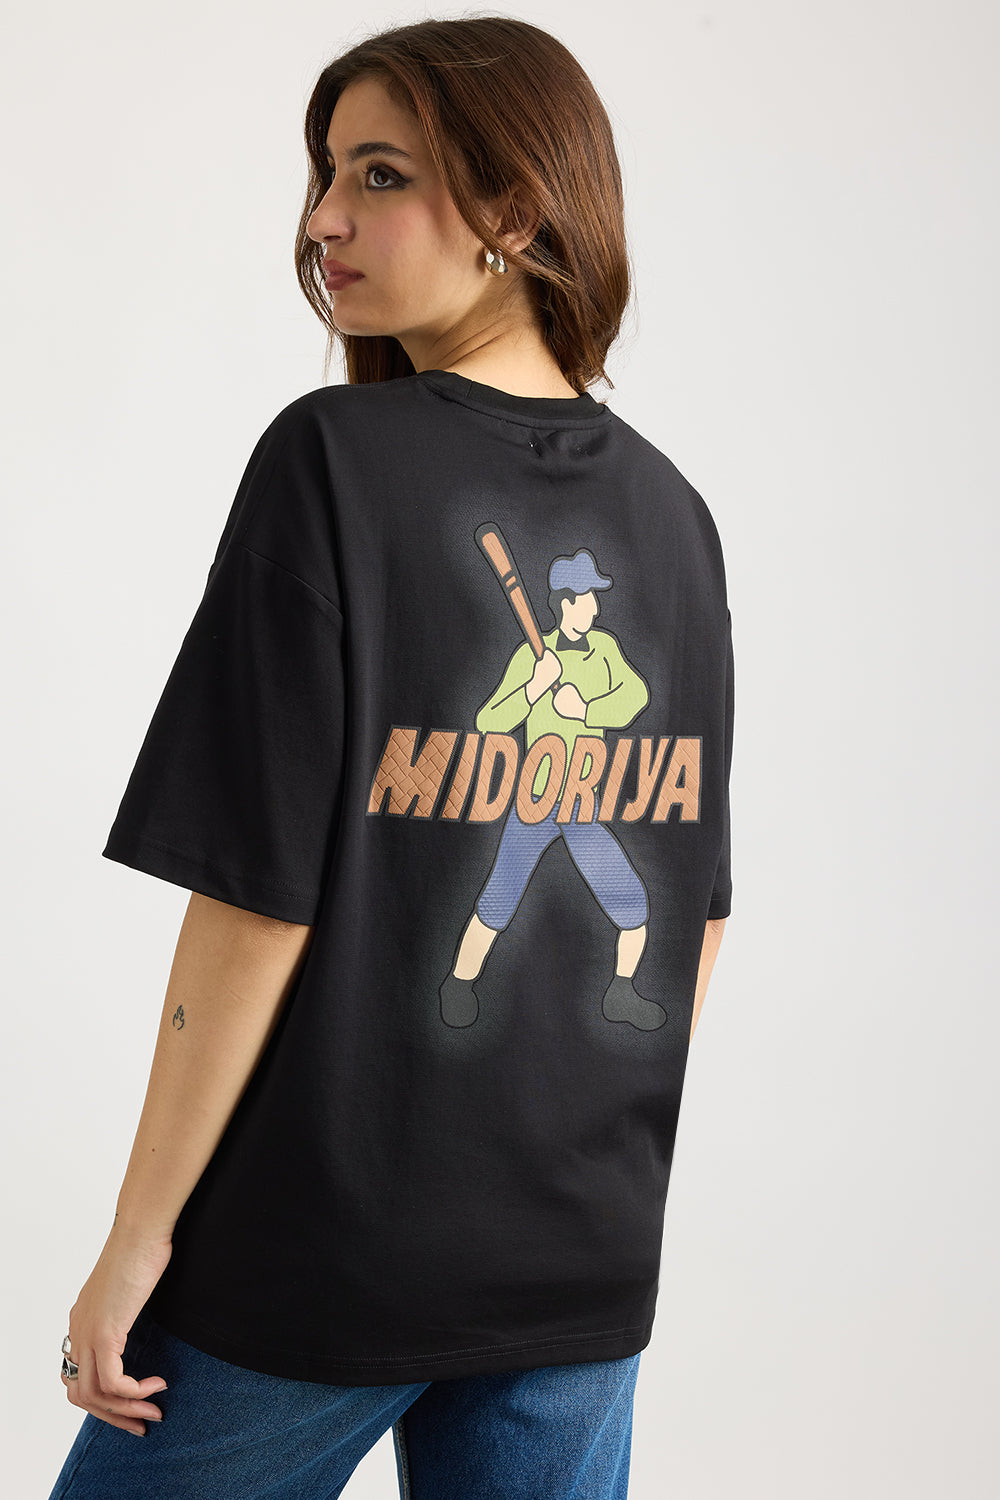 Black Ninja T-shirt